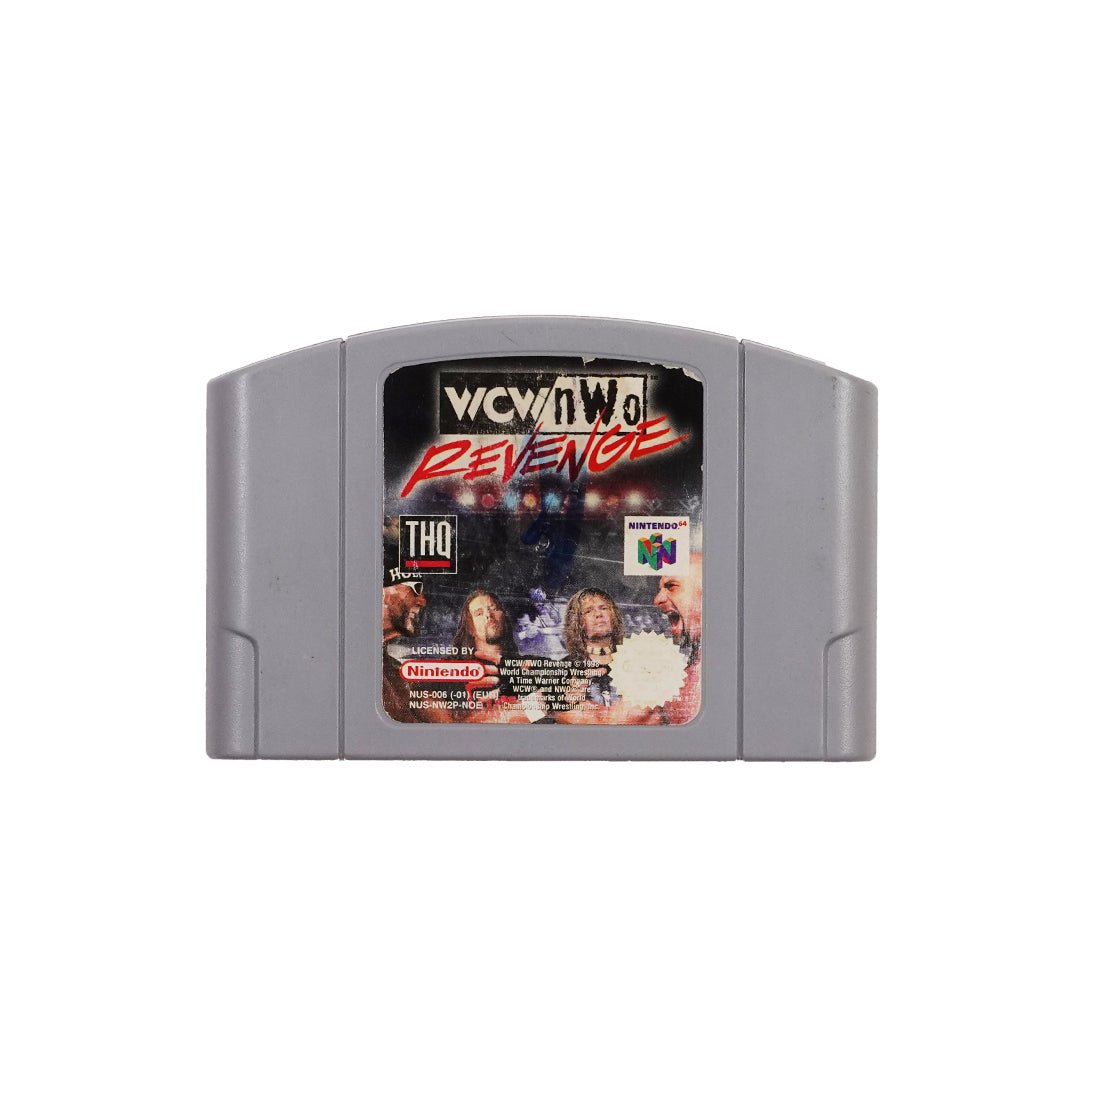 (Pre-Owned) Revenge - Nintendo 64 - Store 974 | ستور ٩٧٤